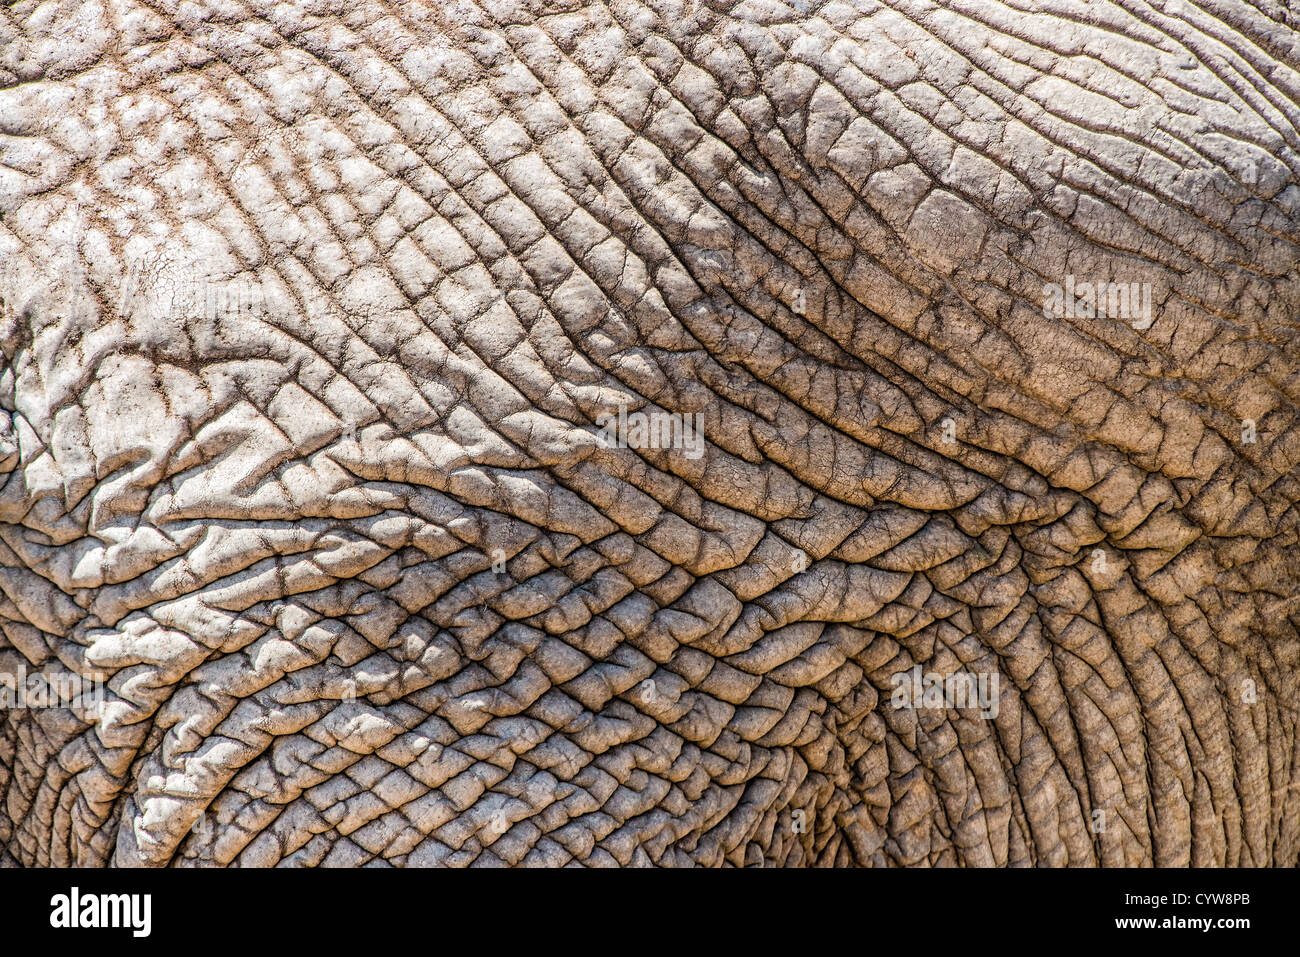 TARANGIRE-NATIONALPARK, Tansania - die zerknitterte Haut eines erwachsenen Elefanten im Tarangire-Nationalpark im Norden Tansanias, nicht weit vom Ngorongoro-Krater und der Serengeti entfernt. Der Ngorongoro-Krater, der zum UNESCO-Weltkulturerbe gehört, ist ein riesiger vulkanischer Krater im Norden Tansanias. Sie wurde vor 2-3 Millionen Jahren gegründet, hat einen Durchmesser von etwa 20 Kilometern und ist die Heimat vielfältiger Tiere, einschließlich der „Big Five“-Wildtiere. Das Ngorongoro Conservation Area, bewohnt von den Maasai, enthält auch bedeutende archäologische Stätten wie die Olduvai-Schlucht und Laetoli, die Einblicke in die frühen Stunden bieten Stockfoto